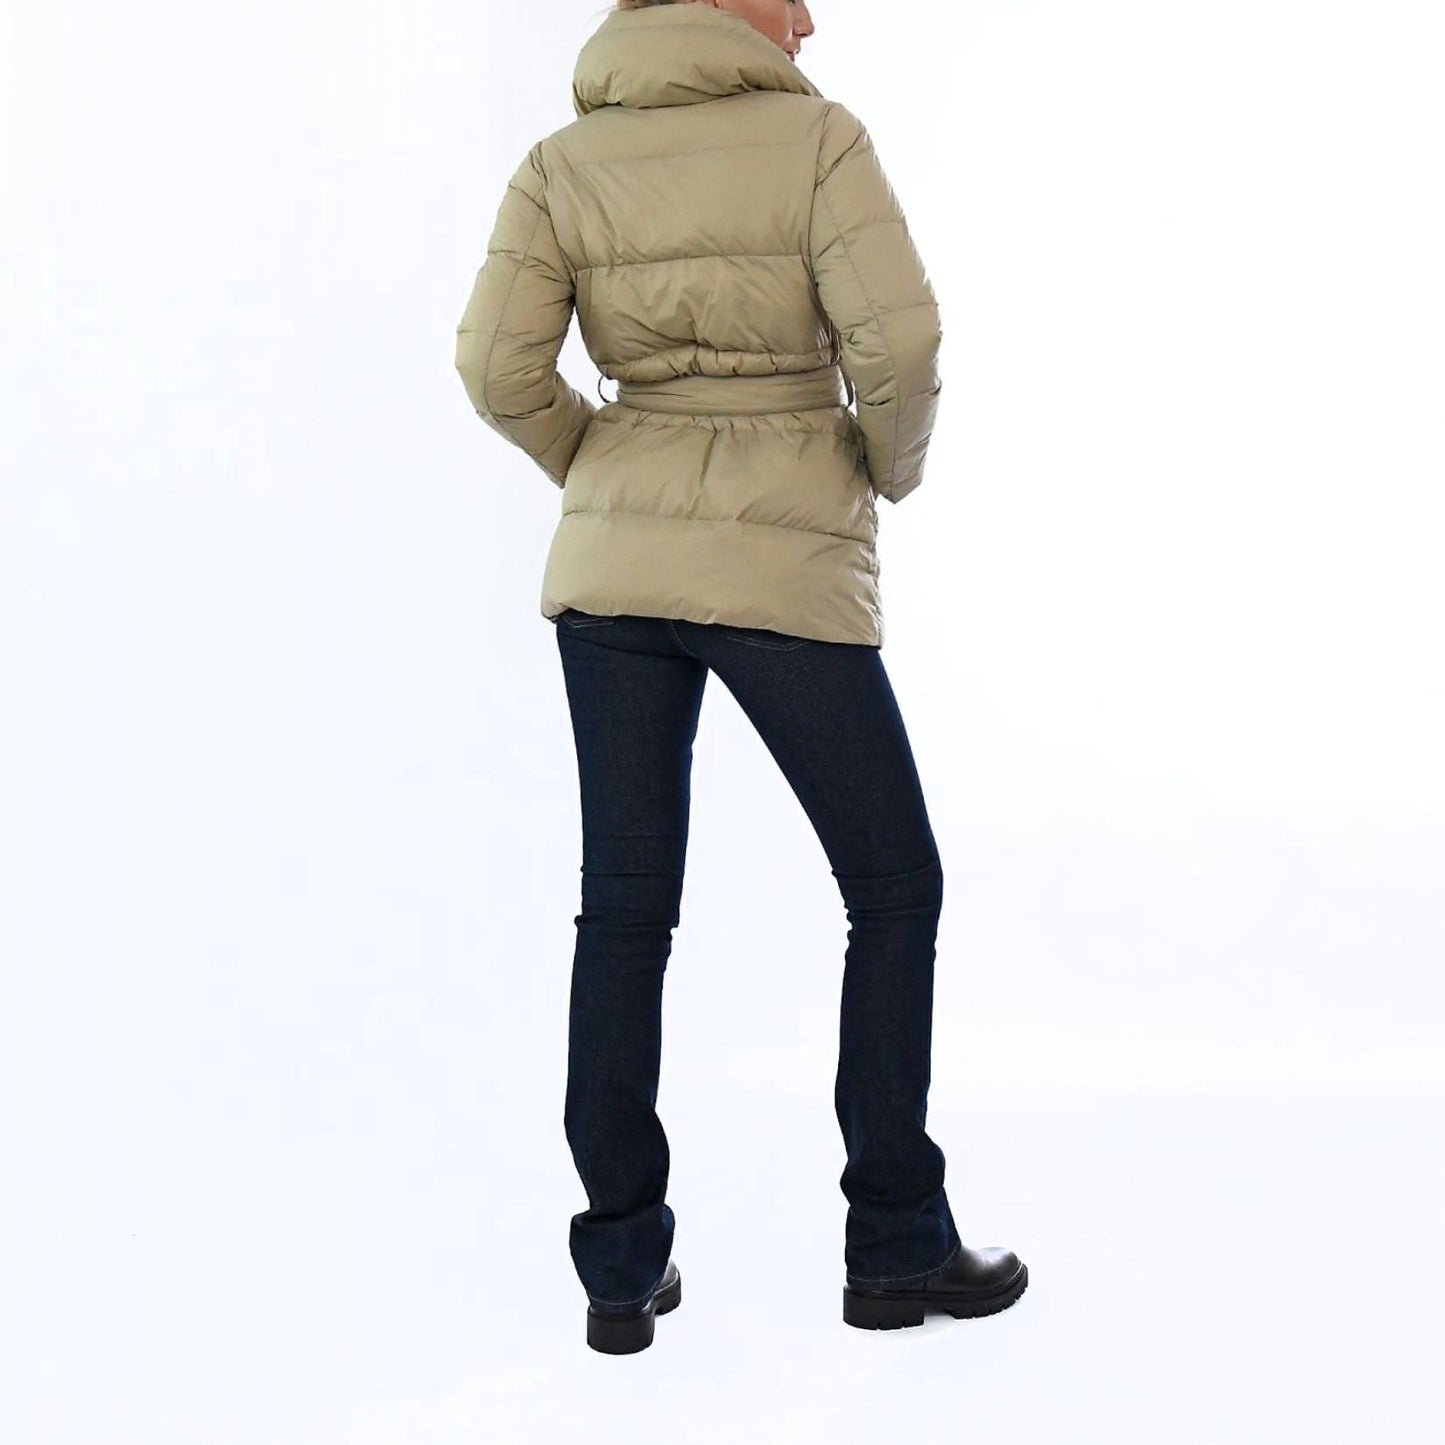 LAUREN RALPH LAUREN moteriškas šviesus pūstas paltas 3/4 bltd sd insulated coat